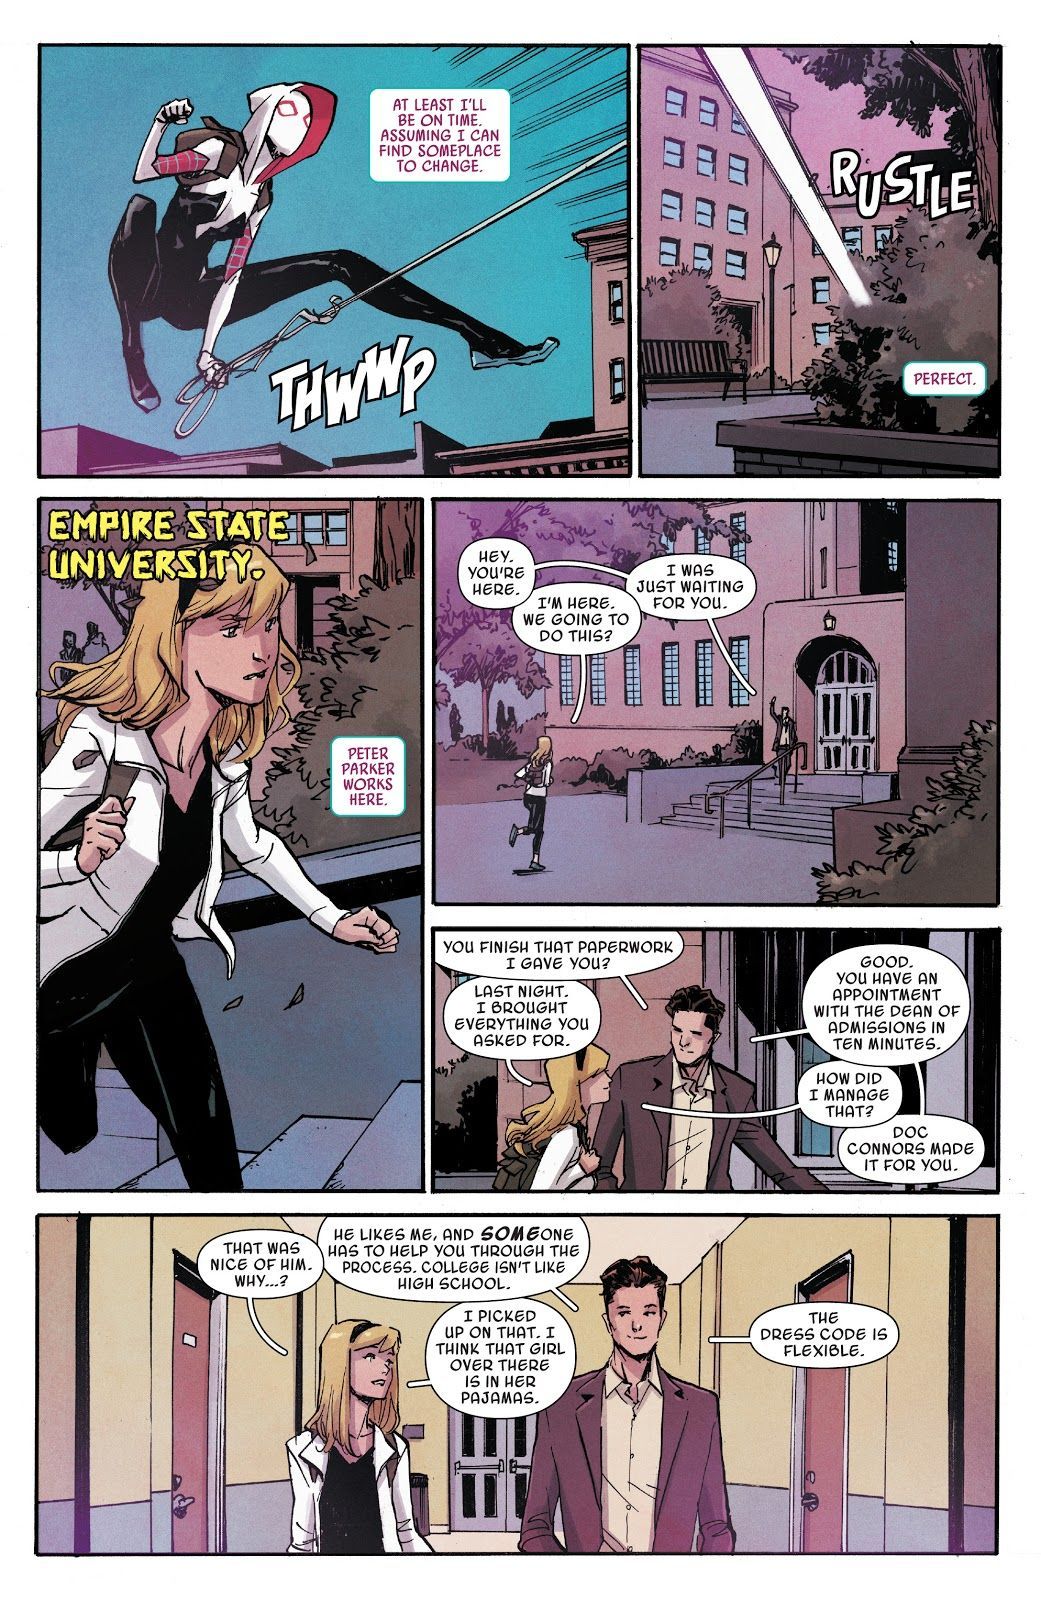 Det unormale, men likevel helt søte Peter Parker / Gwen Stacy-vennskapet